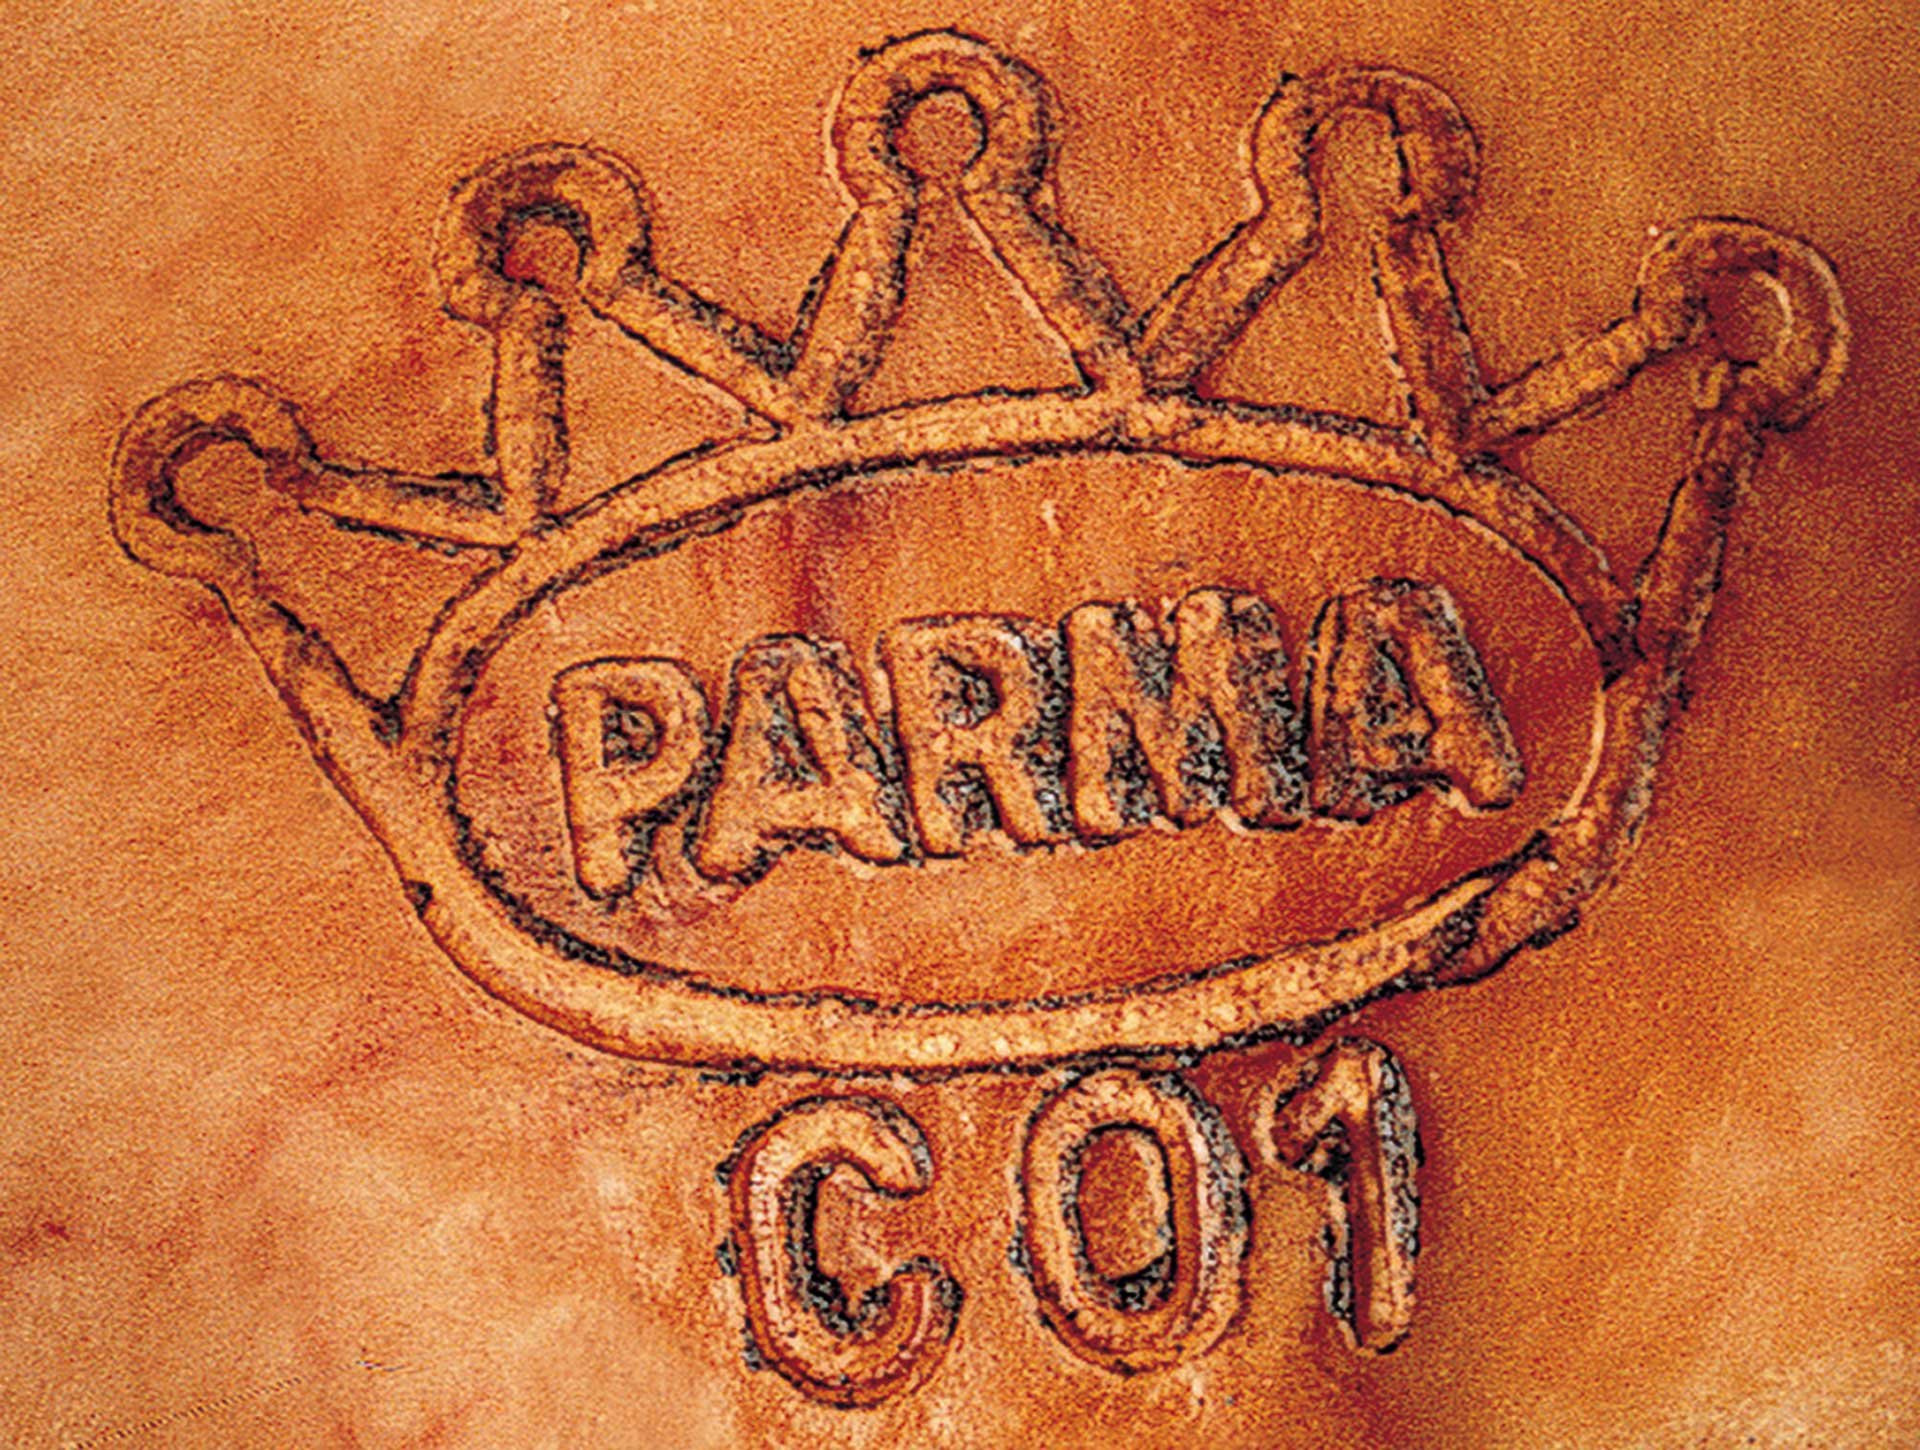 Kennzeichnung des Parma Schinkens